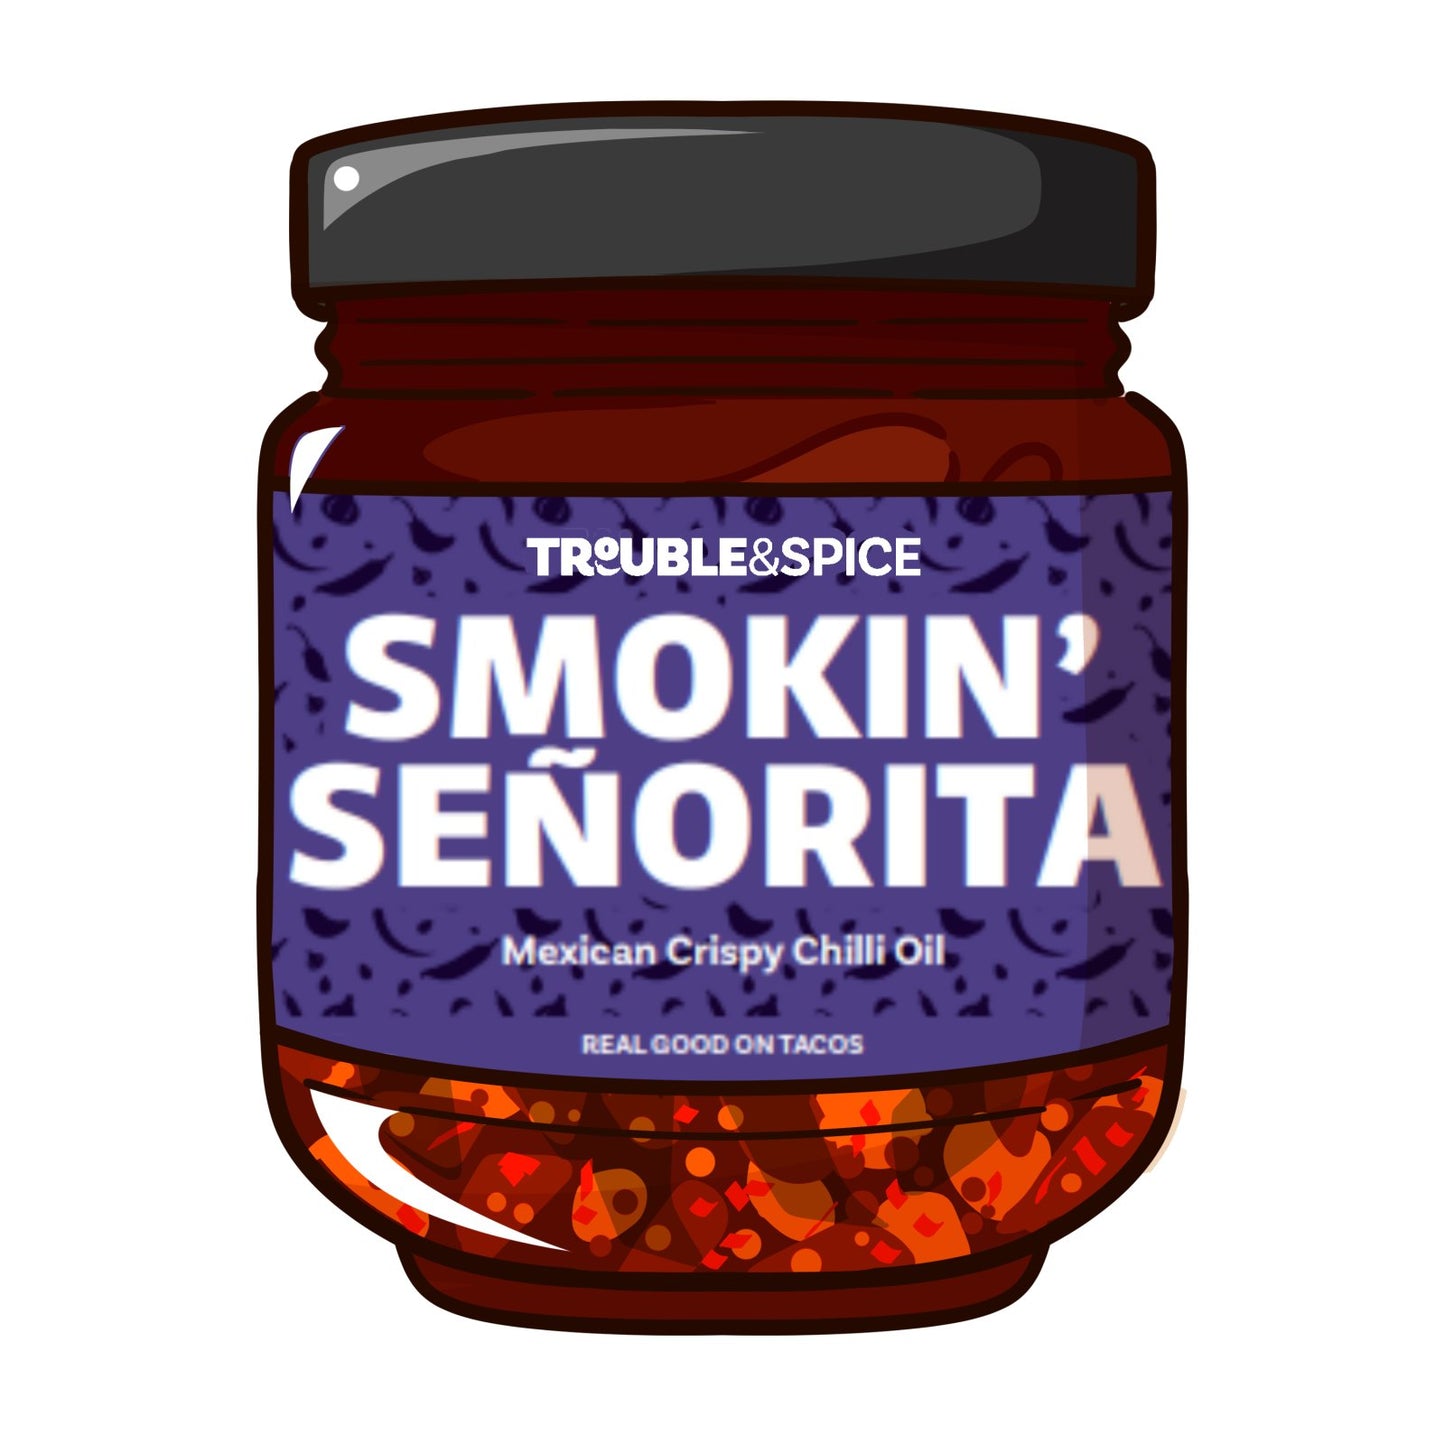 Smokin' Senorita - Mexican Crispy Chilli Oil